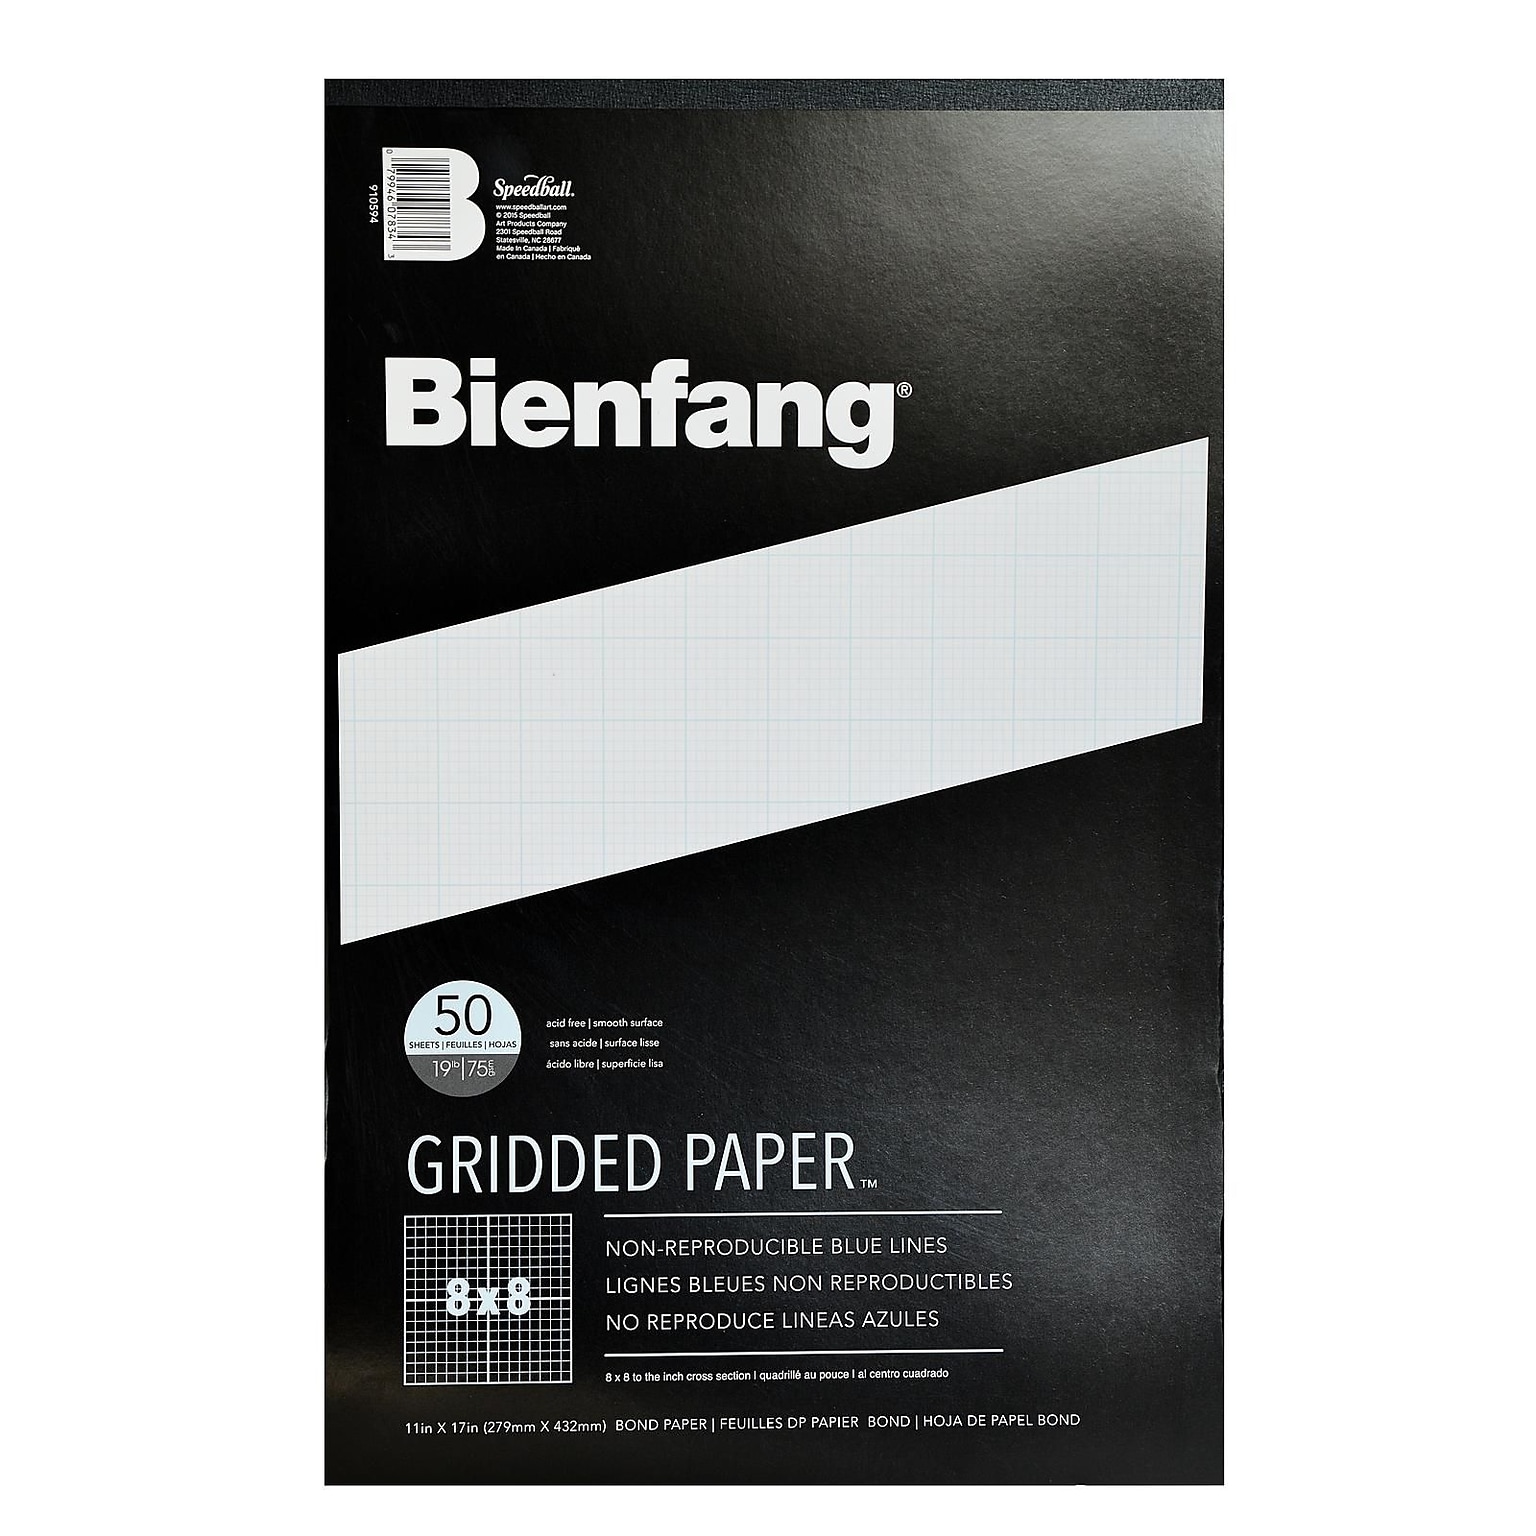 Bienfang Gridded Paper 8 X 8 11 In. X 17 In. Pad Of 50 [Pack Of 2] (2PK-910594)